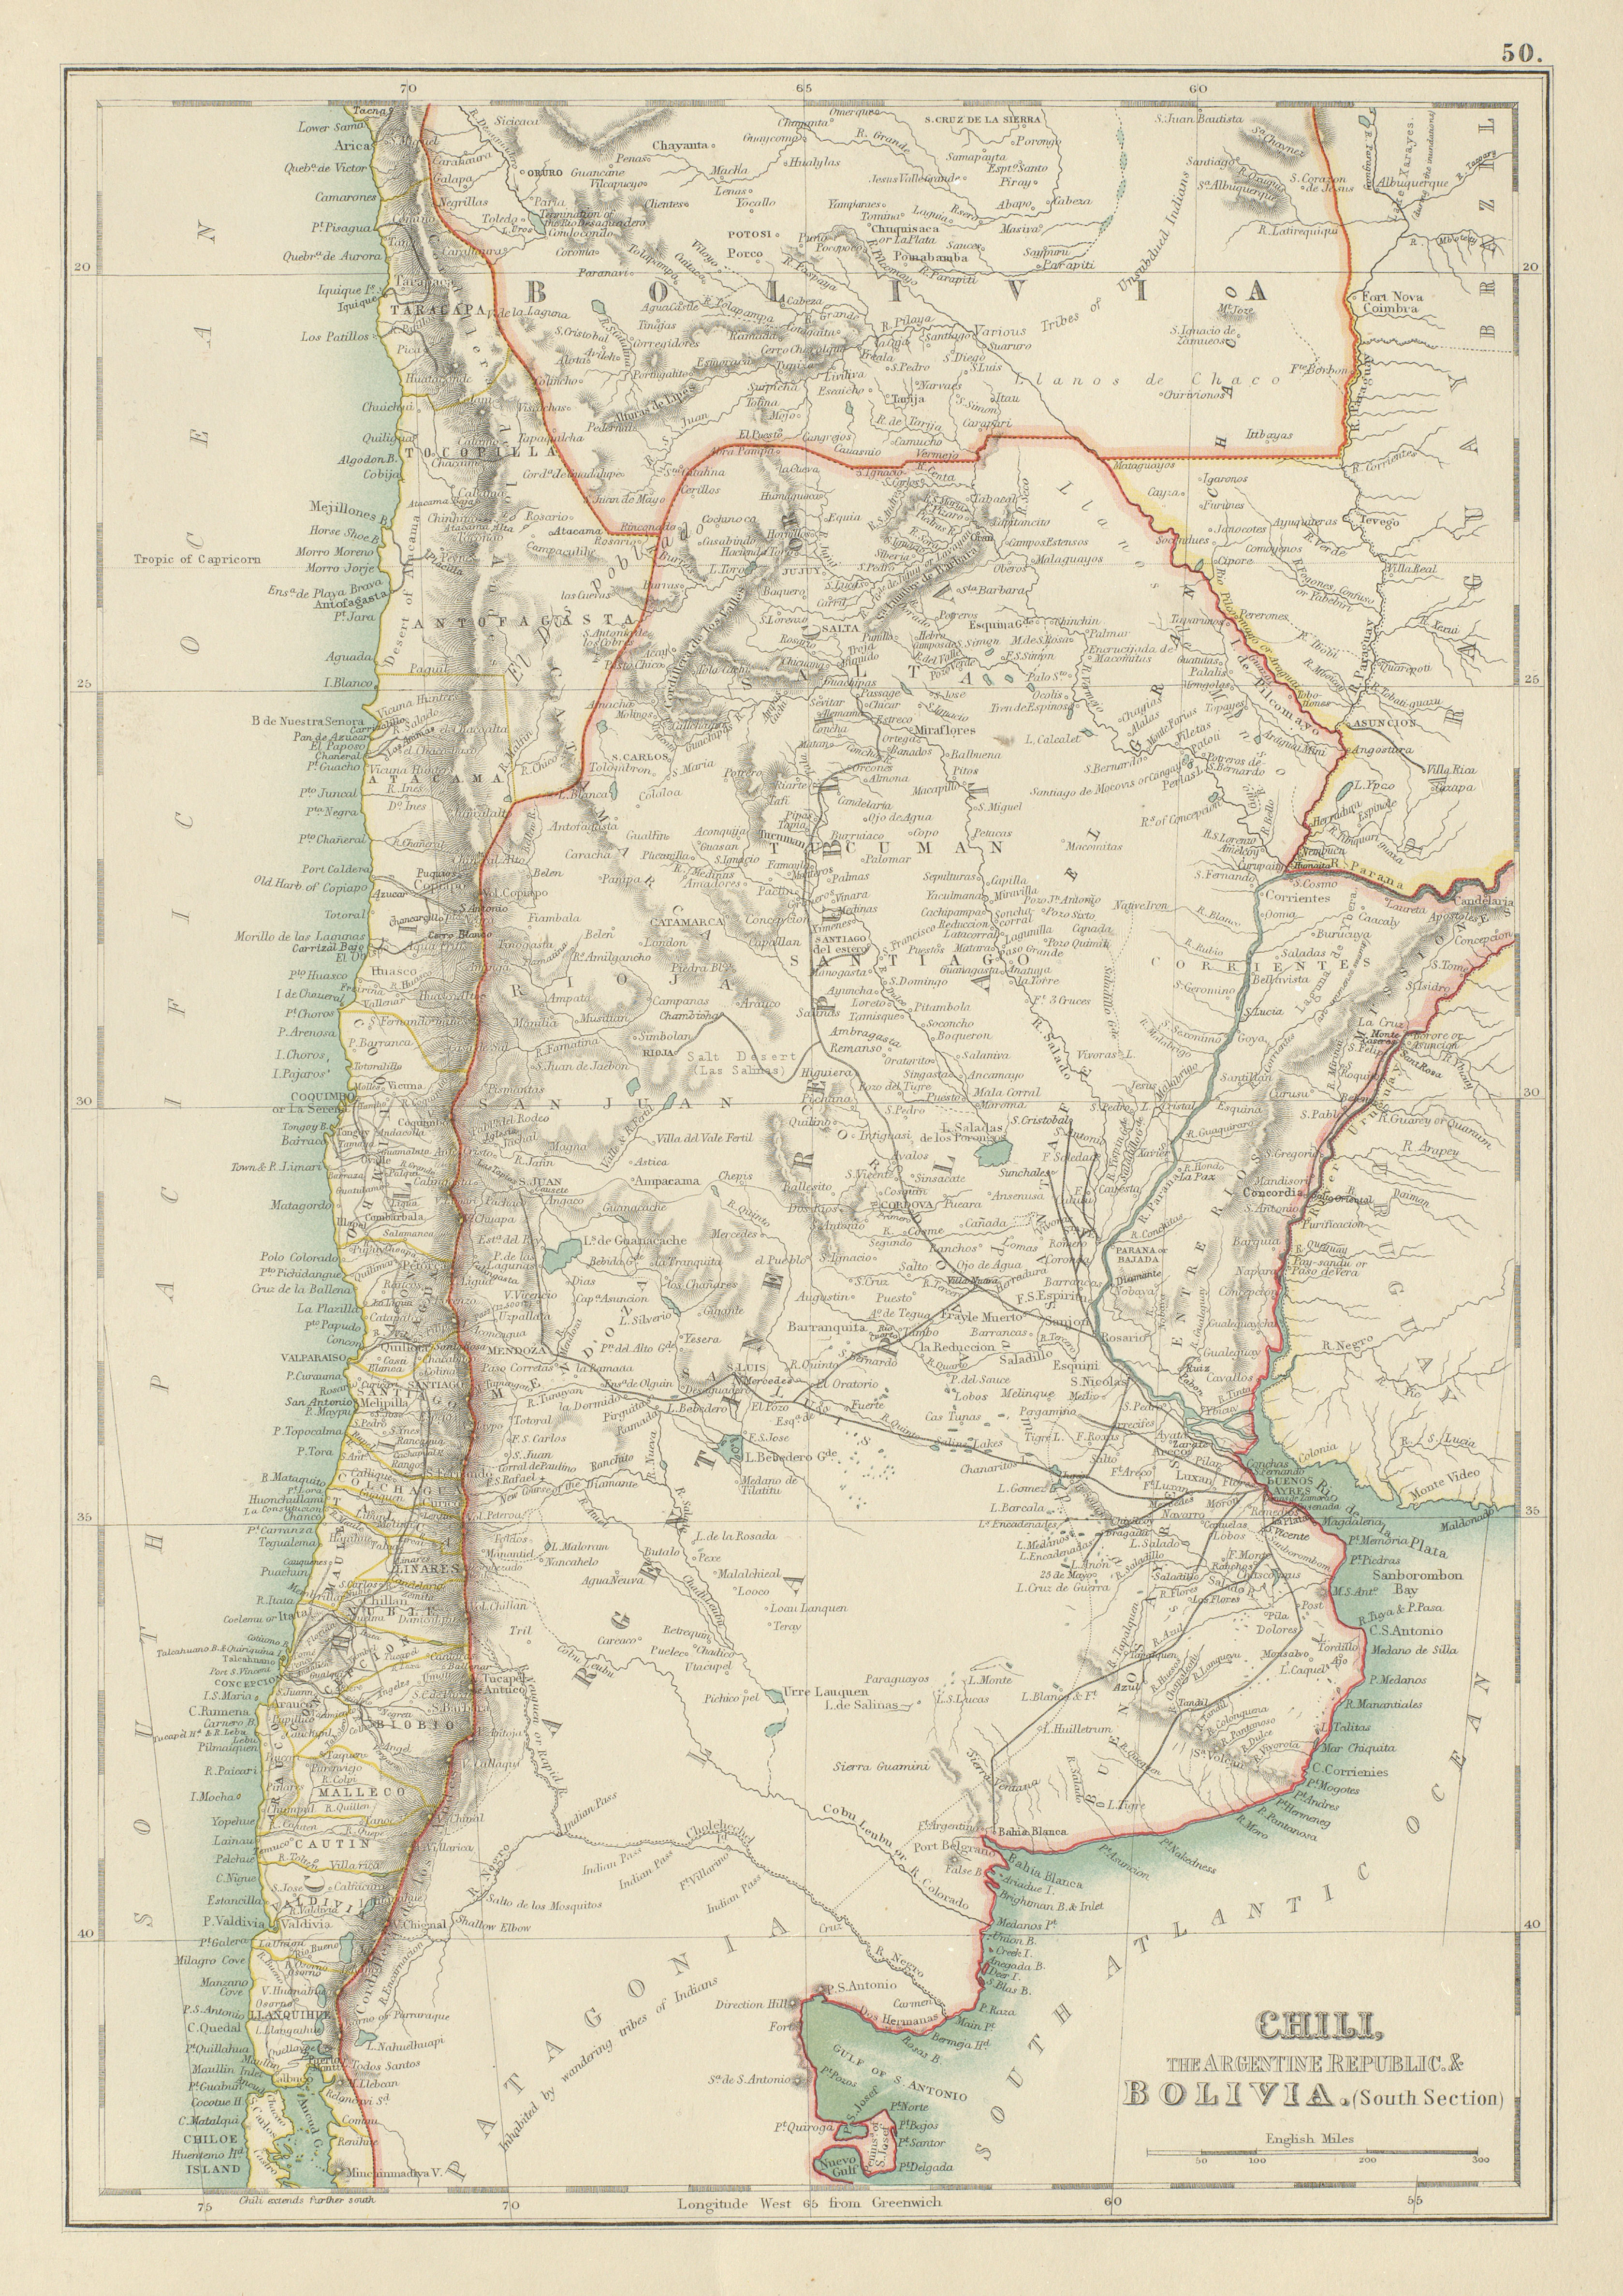 Associate Product Chili Argentine Republic Bolivia. Chile Argentina Railways. BARTHOLOMEW 1898 map